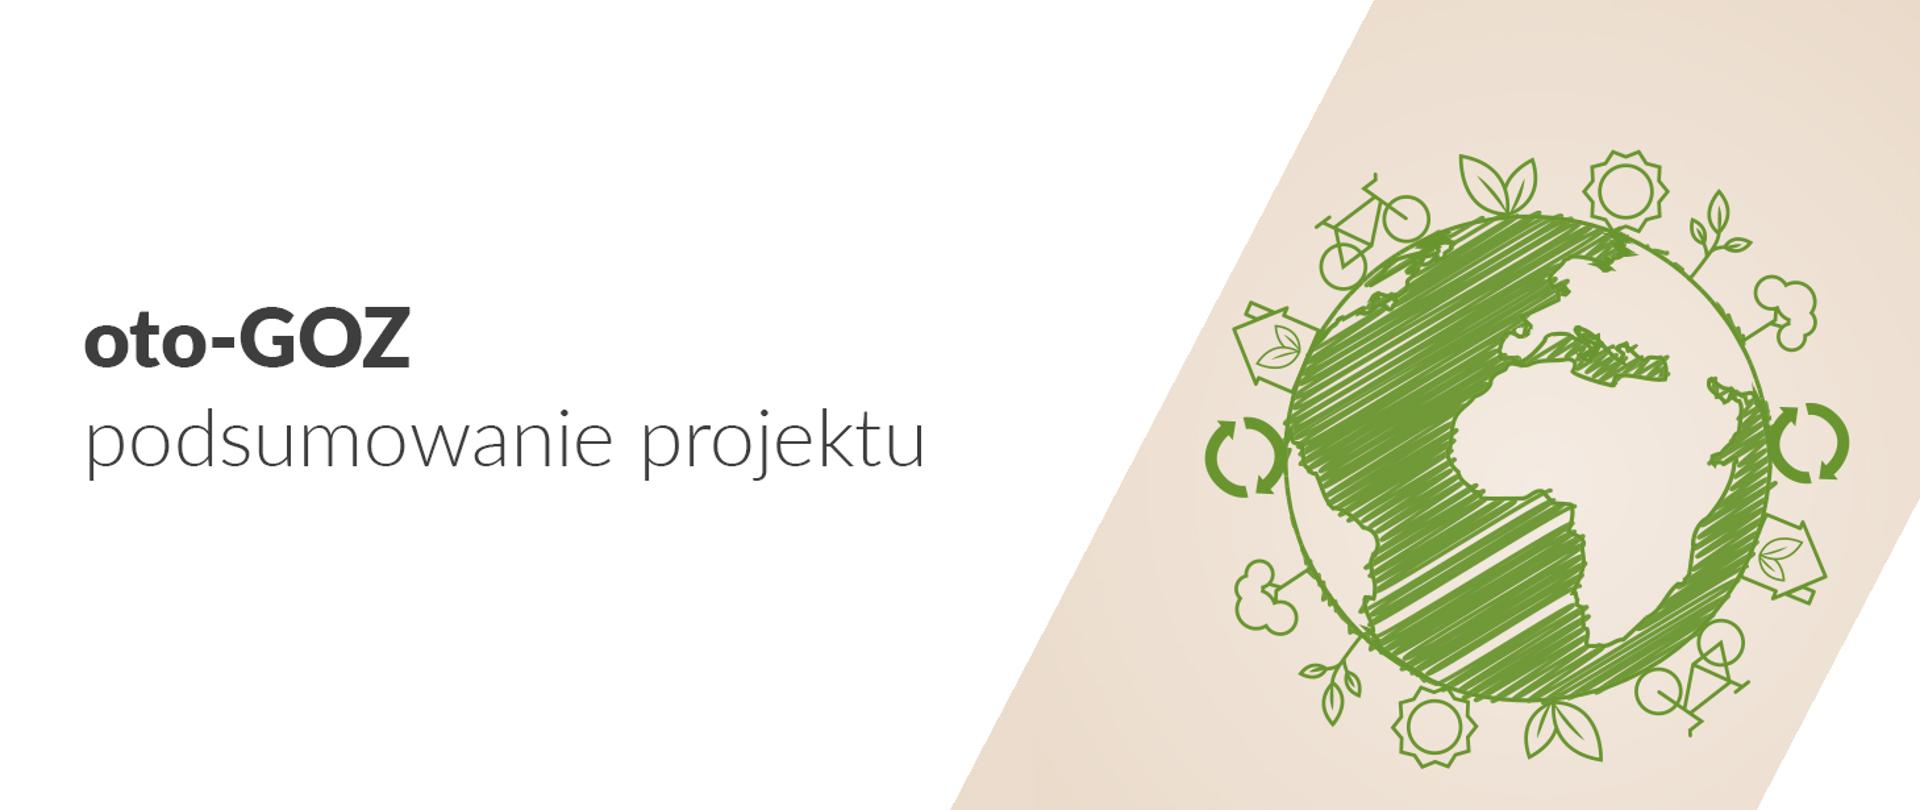 Grafika z napisem: oto-GOZ podsumowanie projektu. Z prawej strony rysunek kuli ziemskiej z symbolami, np. roweru, domu, roślin.